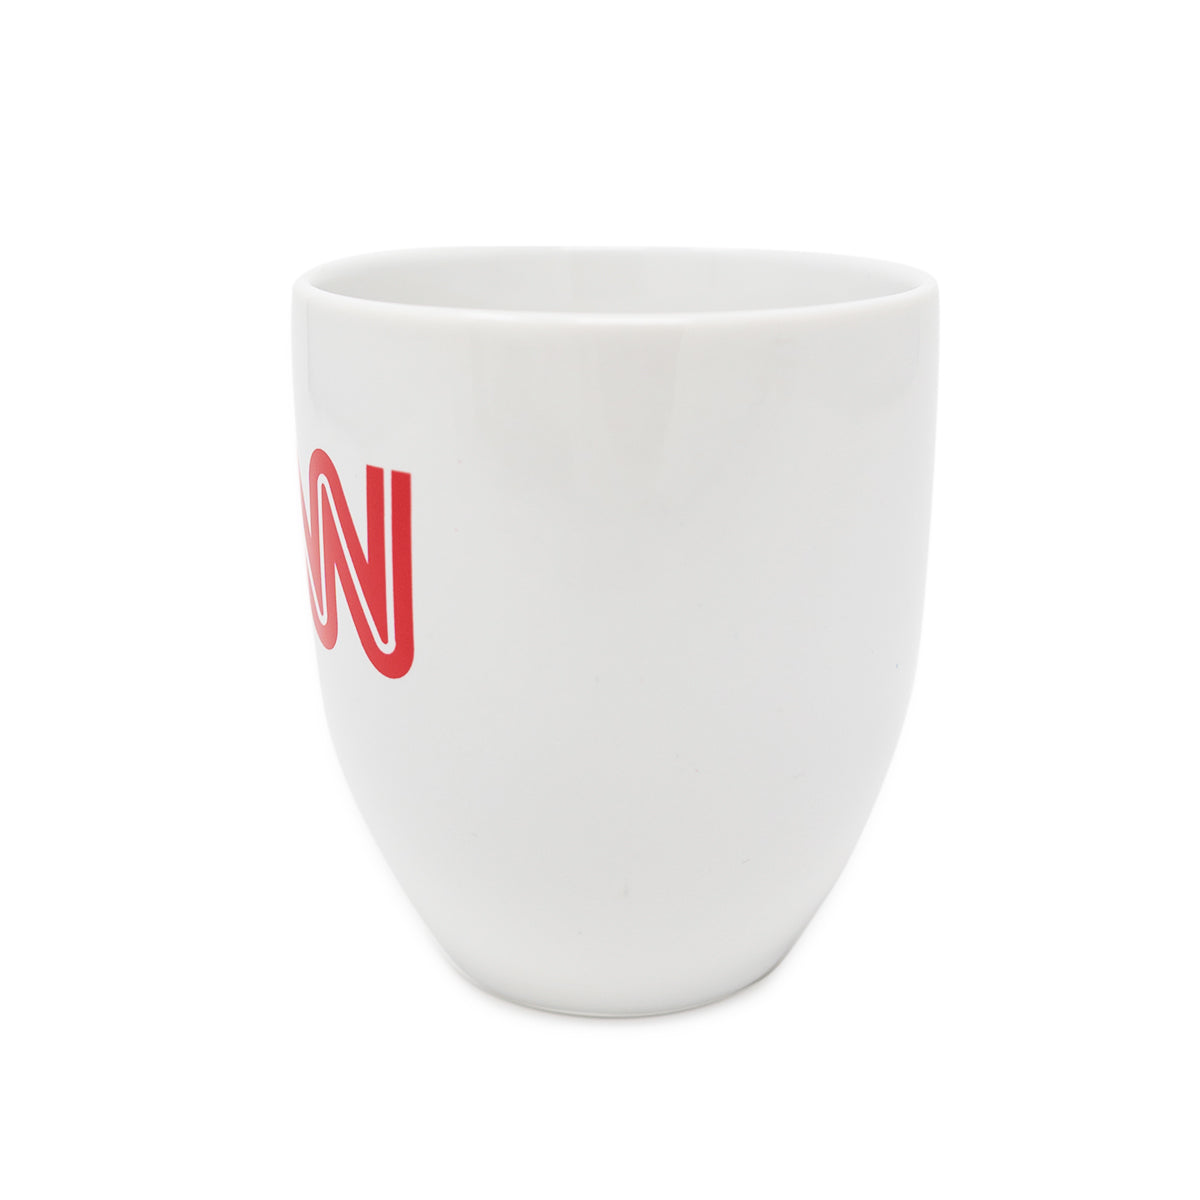 Official CNN Logo 16oz Ceramic Mug